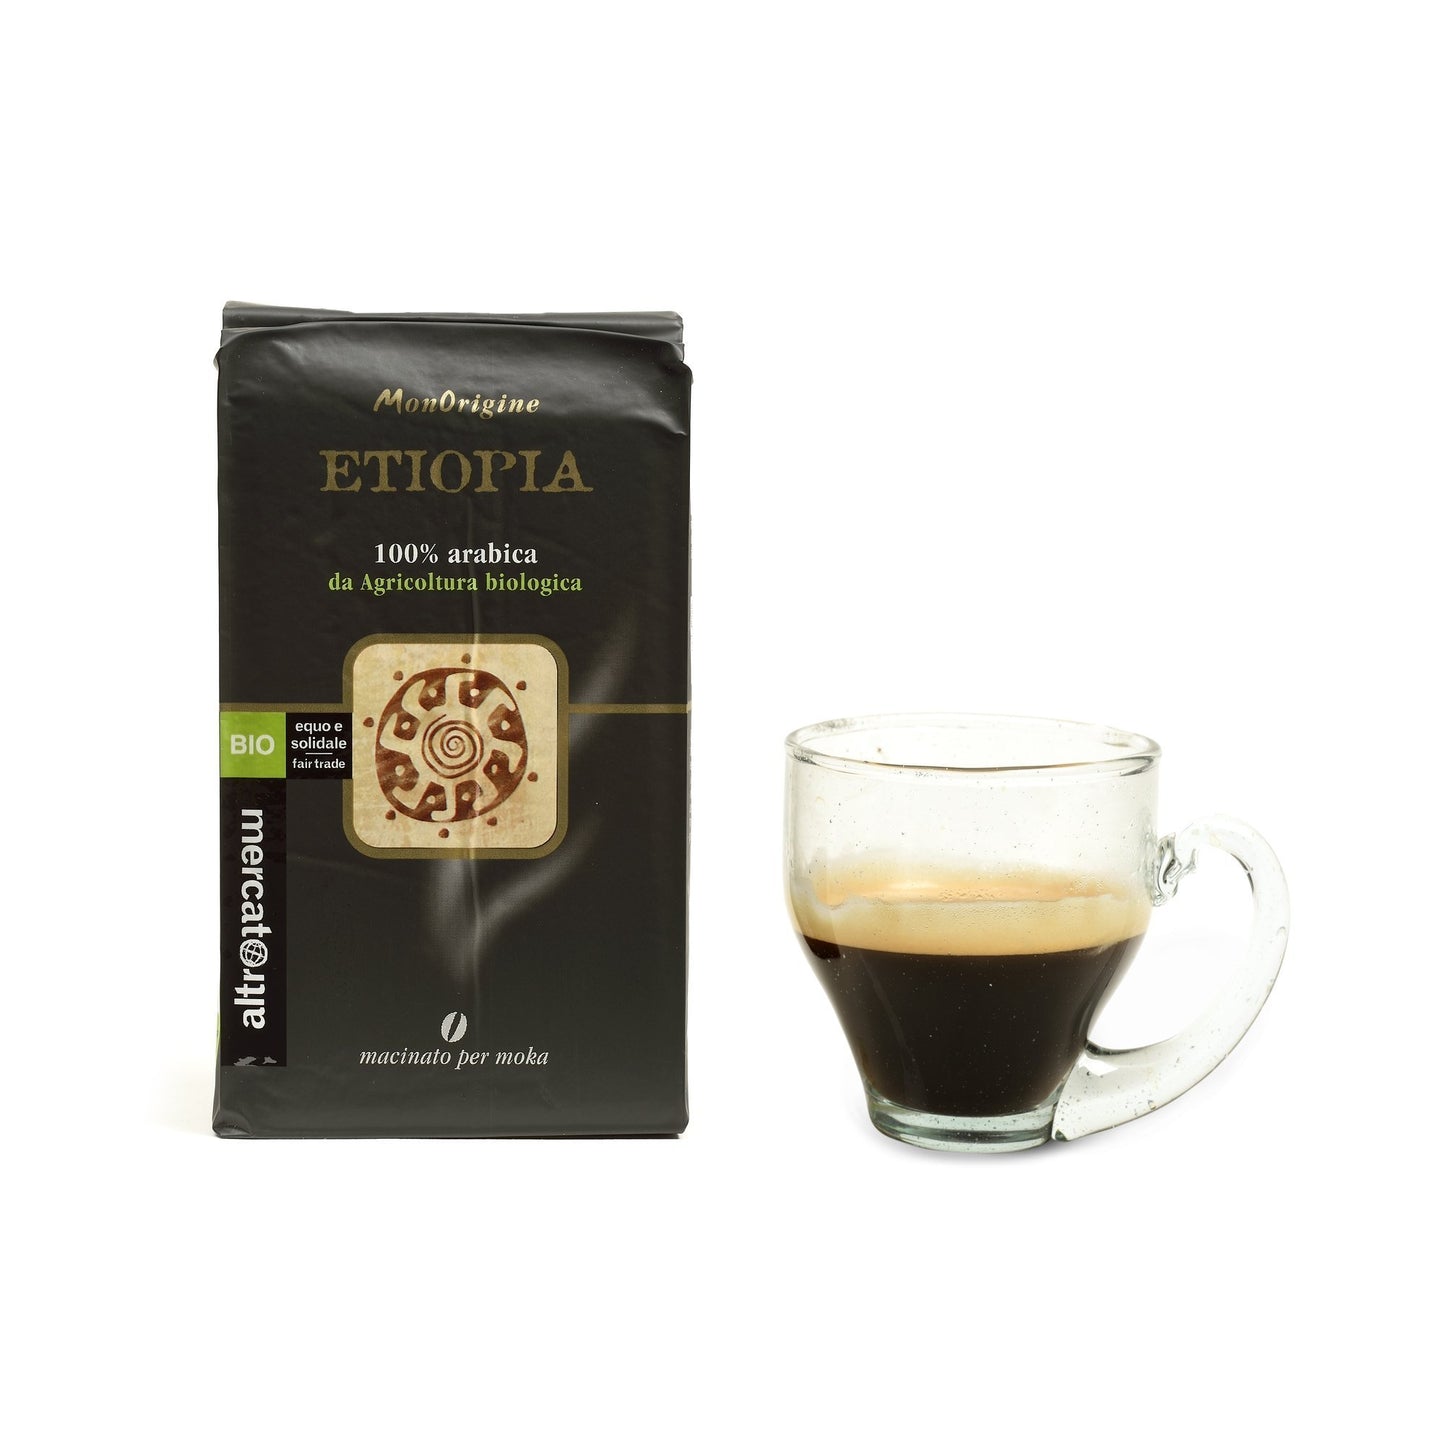 Caffè Monorigine 100% arabica e biologica, nasce sugli altipiani etiopi da agricoltura sostenibile.Varietà tra le più rinomate produce un aroma intenso e un sapore con sentore fruttato